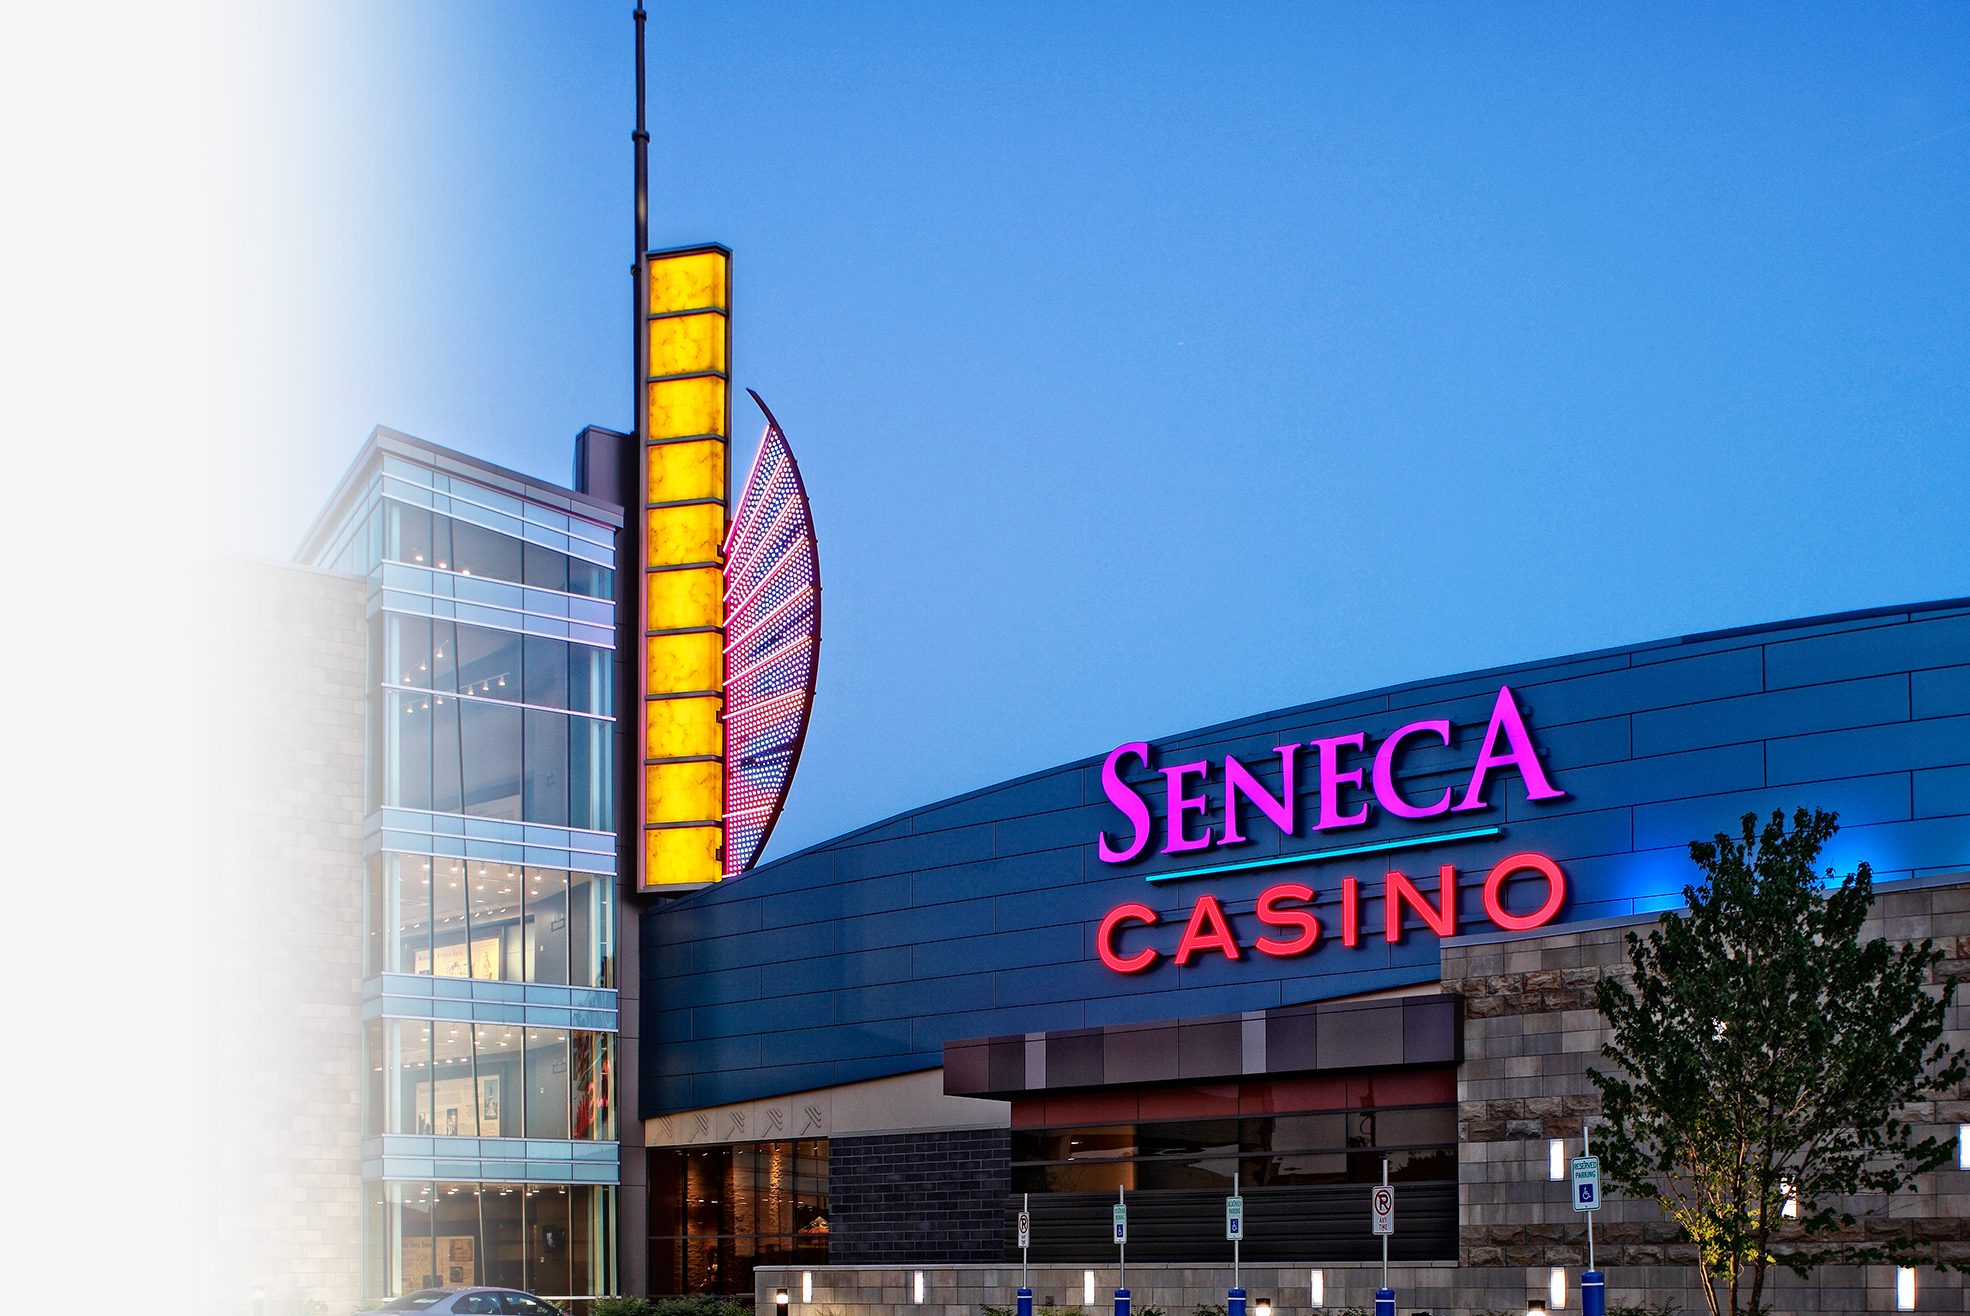 seneca casino hotels hiring near me